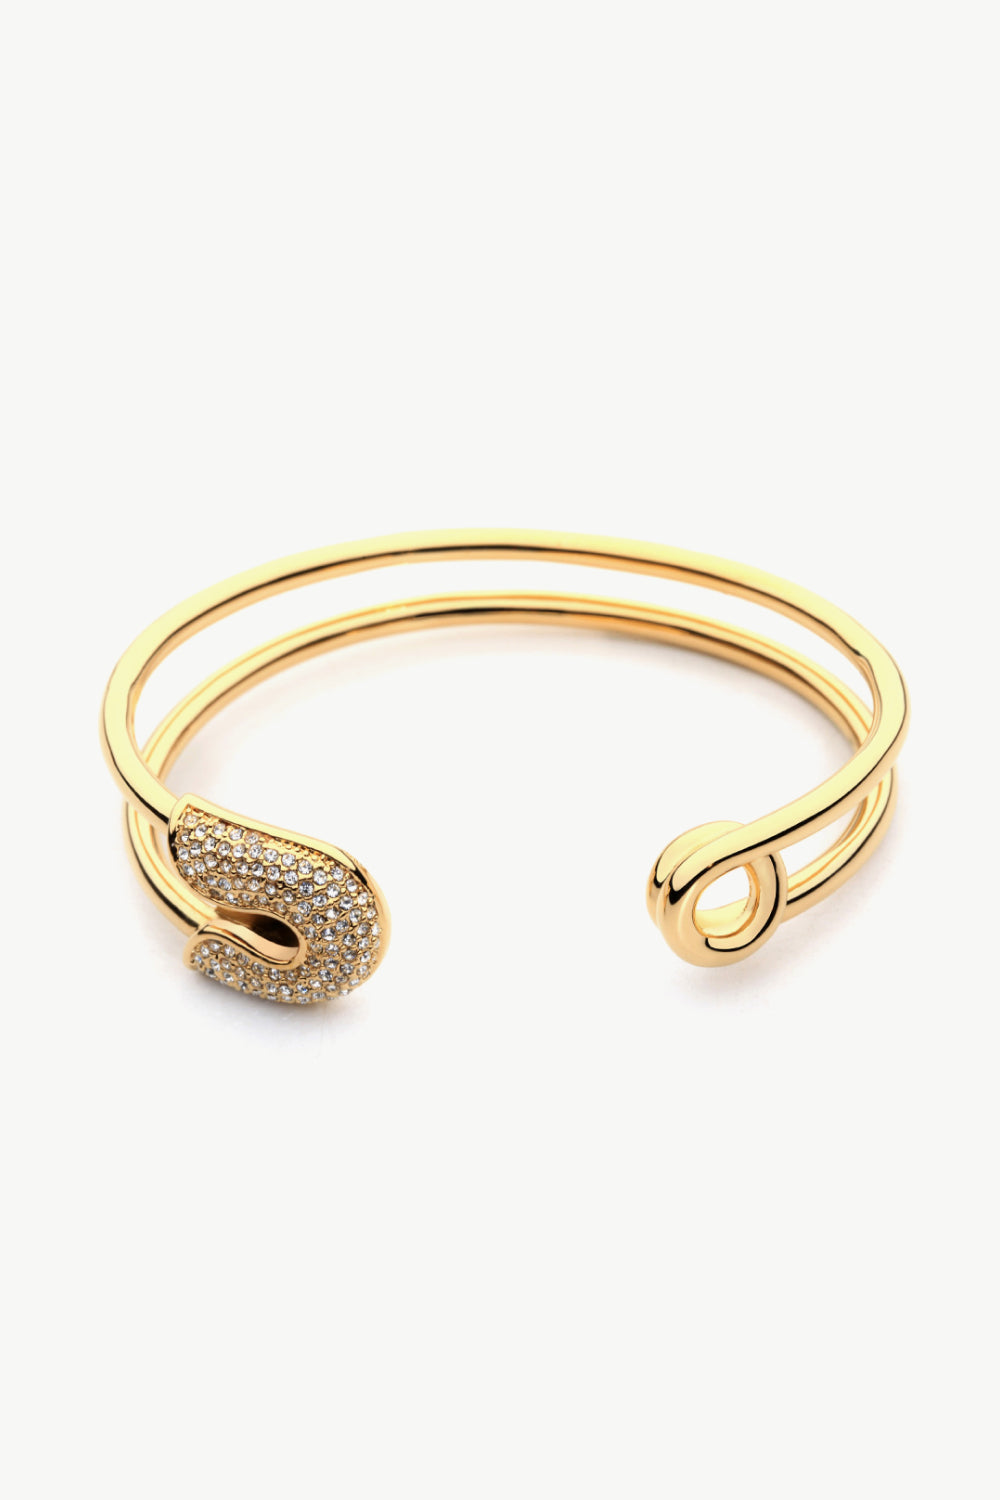 Rhinestone Double Hoop Bracelet - Women’s Jewelry - Bracelets - 3 - 2024